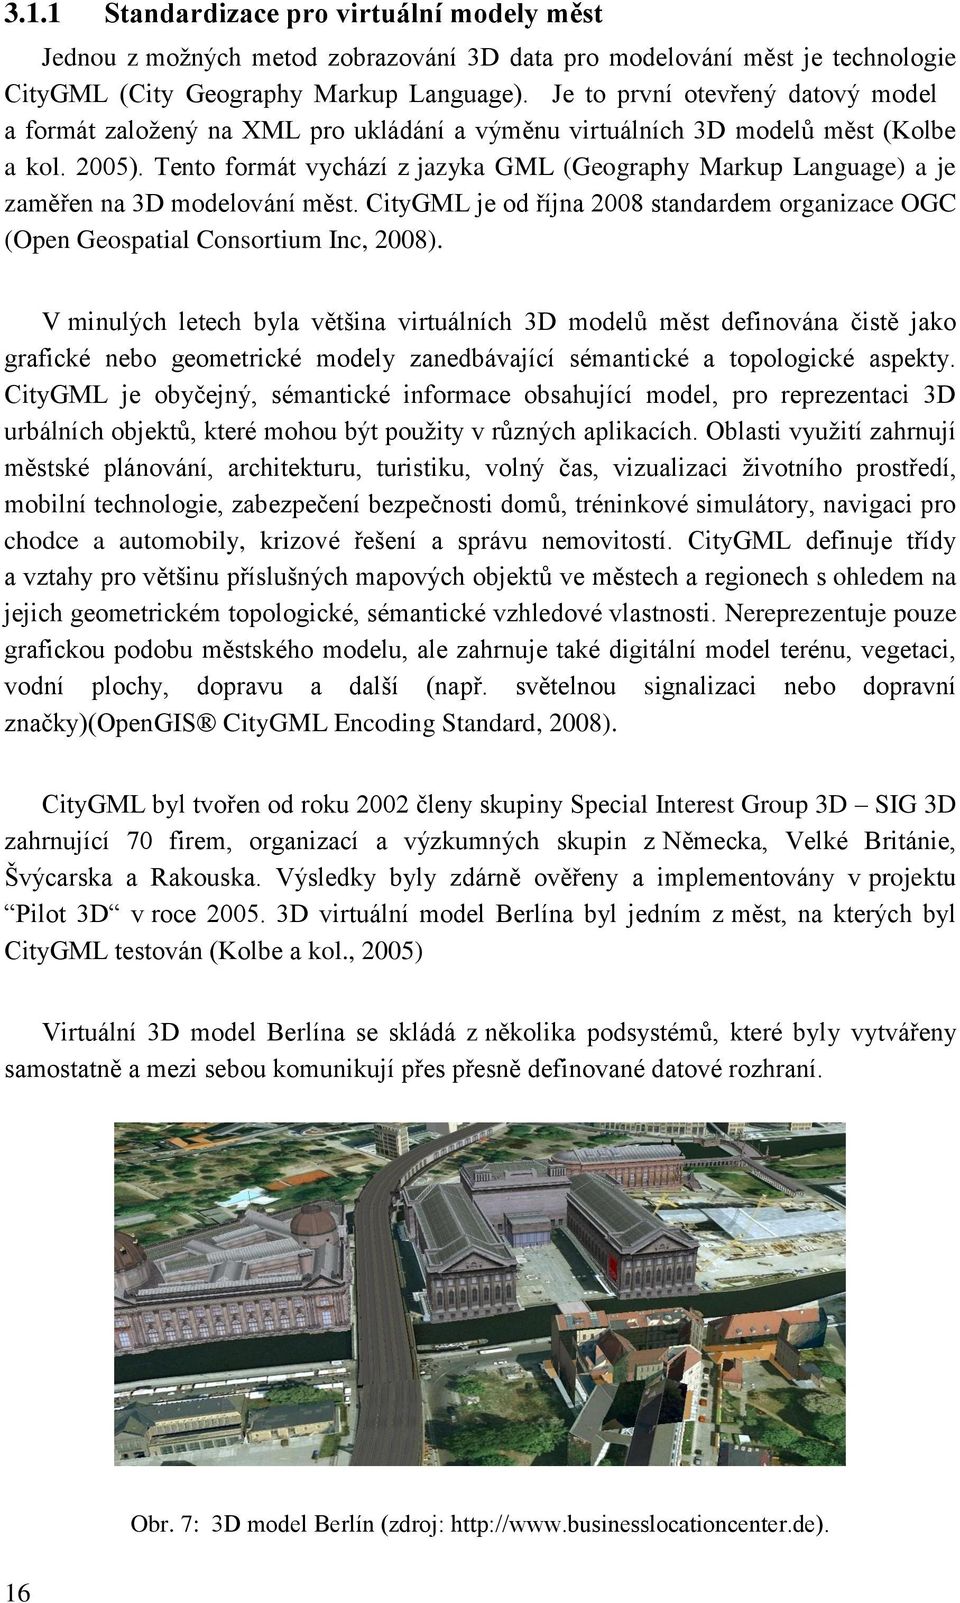 Tento formát vychází z jazyka GML (Geography Markup Language) a je zaměřen na 3D modelování měst. CityGML je od října 2008 standardem organizace OGC (Open Geospatial Consortium Inc, 2008).